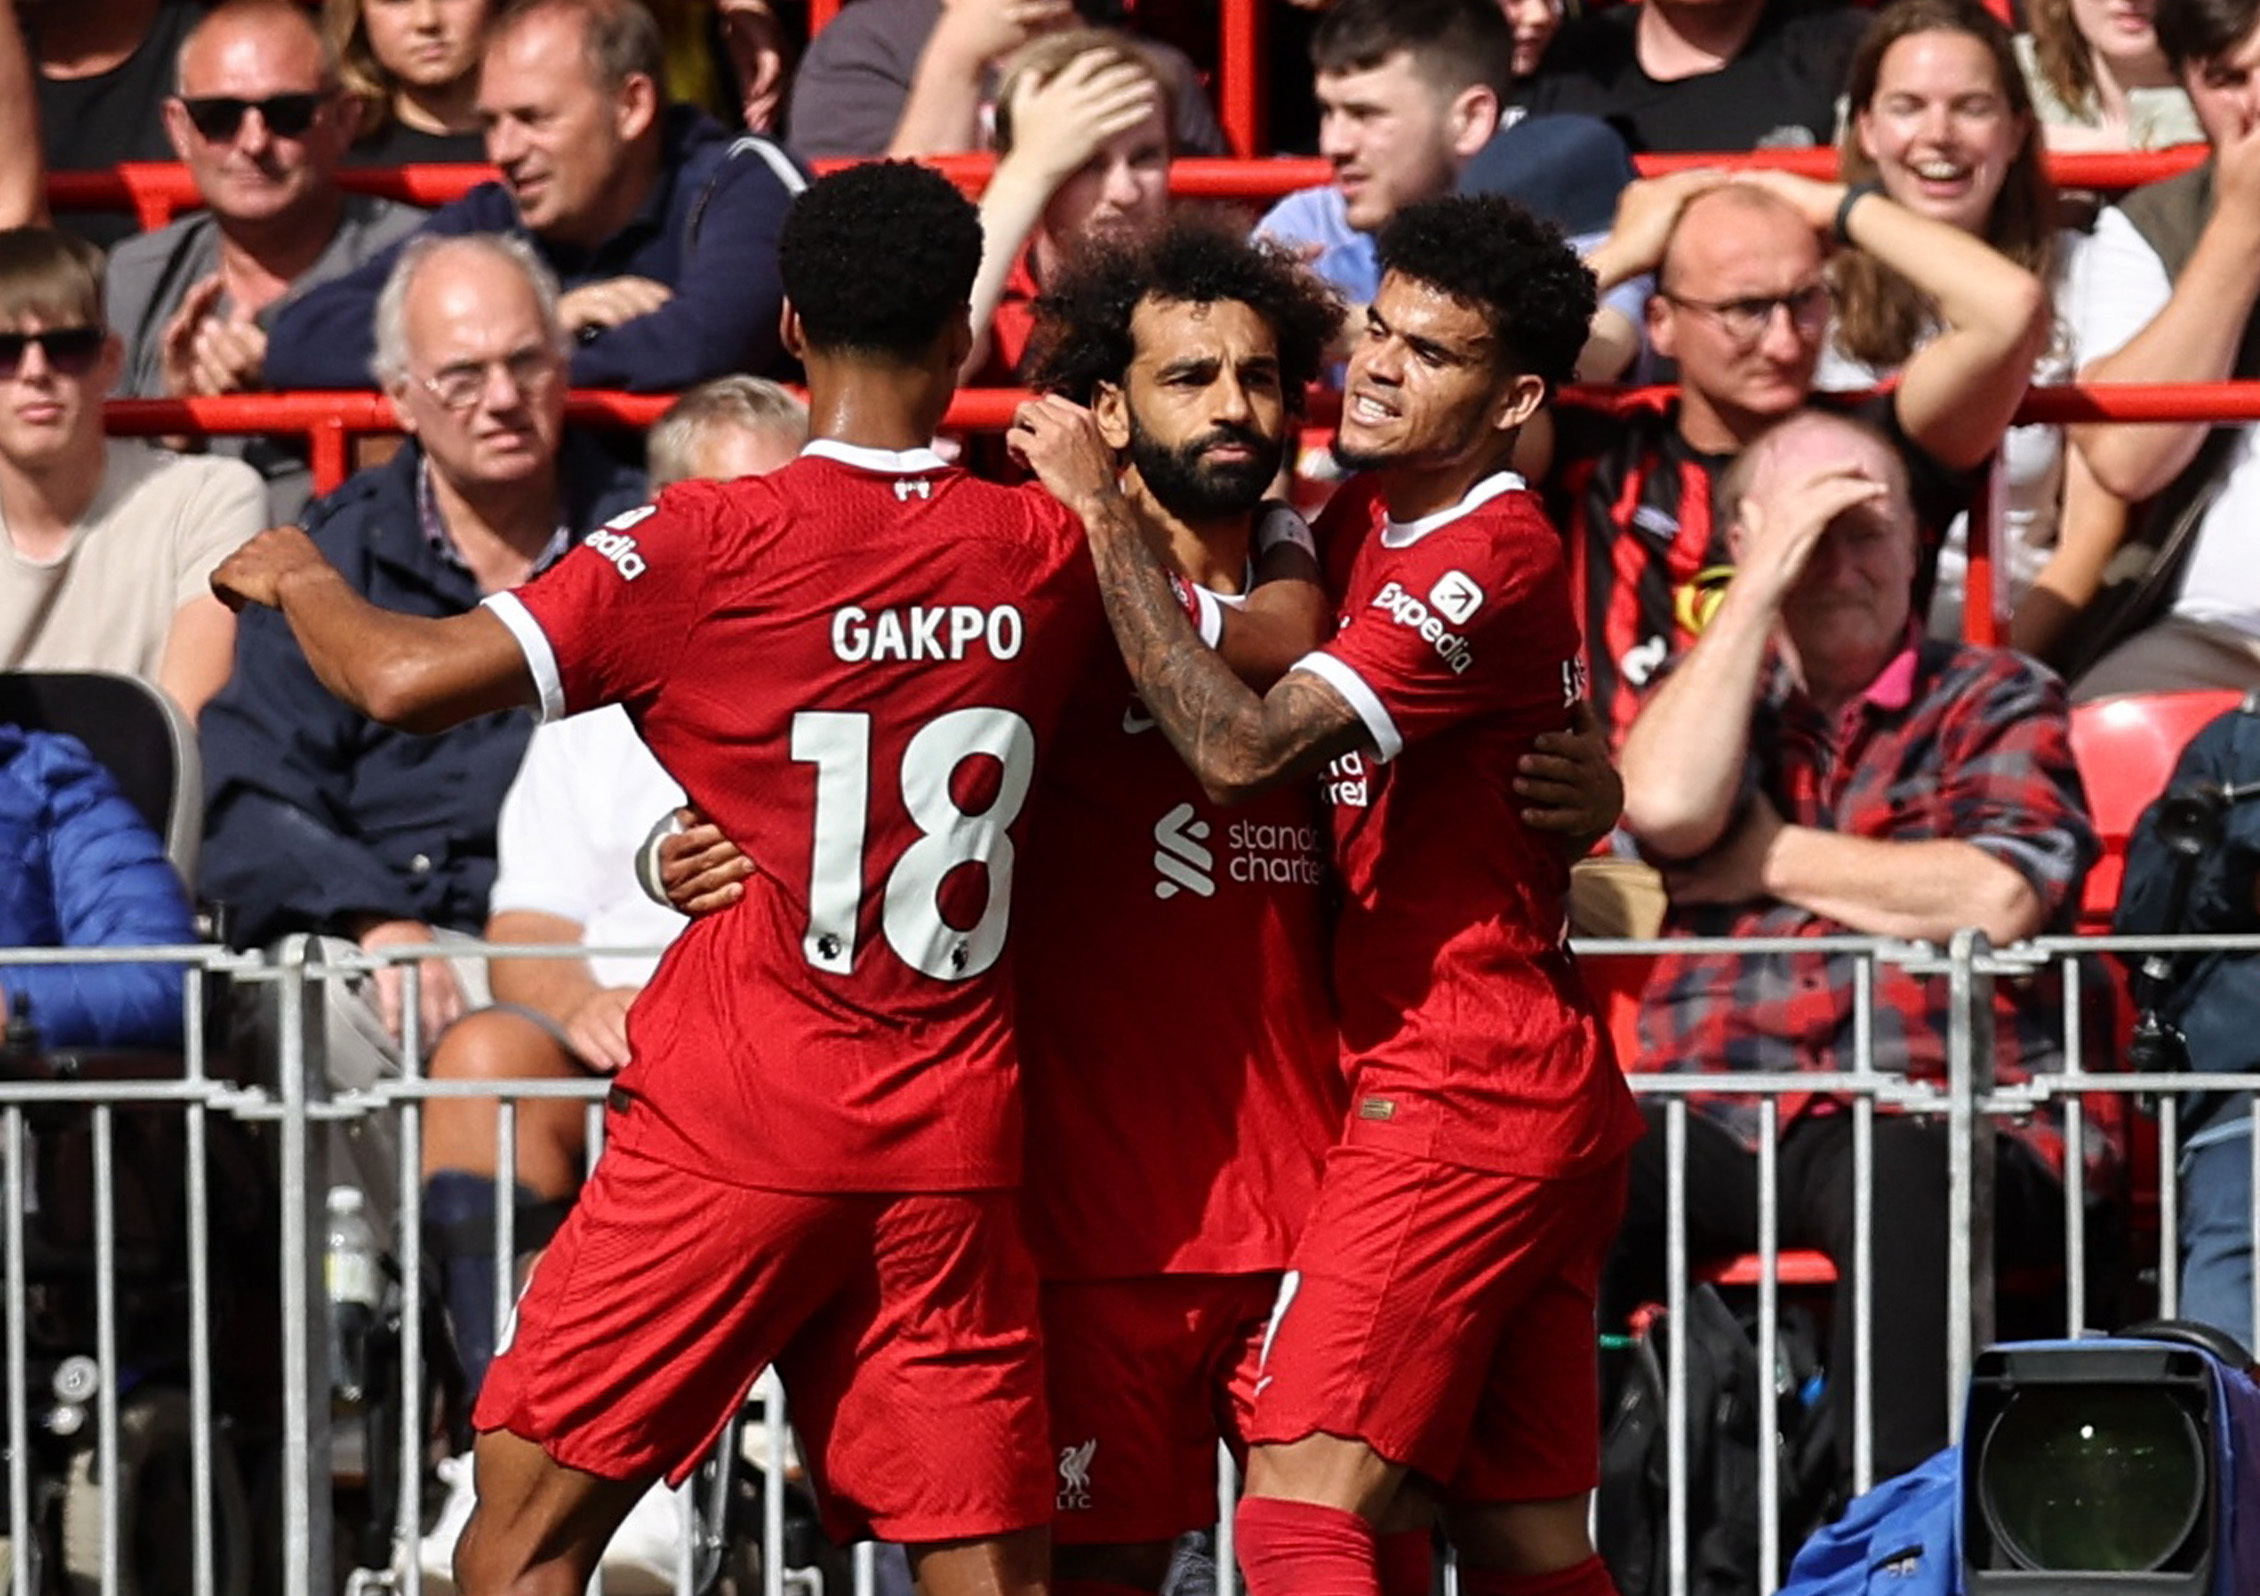 Λίβερπουλ – Μπόρνμουθ 3-1: Πρώτη νίκη με ανατροπή και 10 παίκτες για τους «κόκκινους» στην Premier League